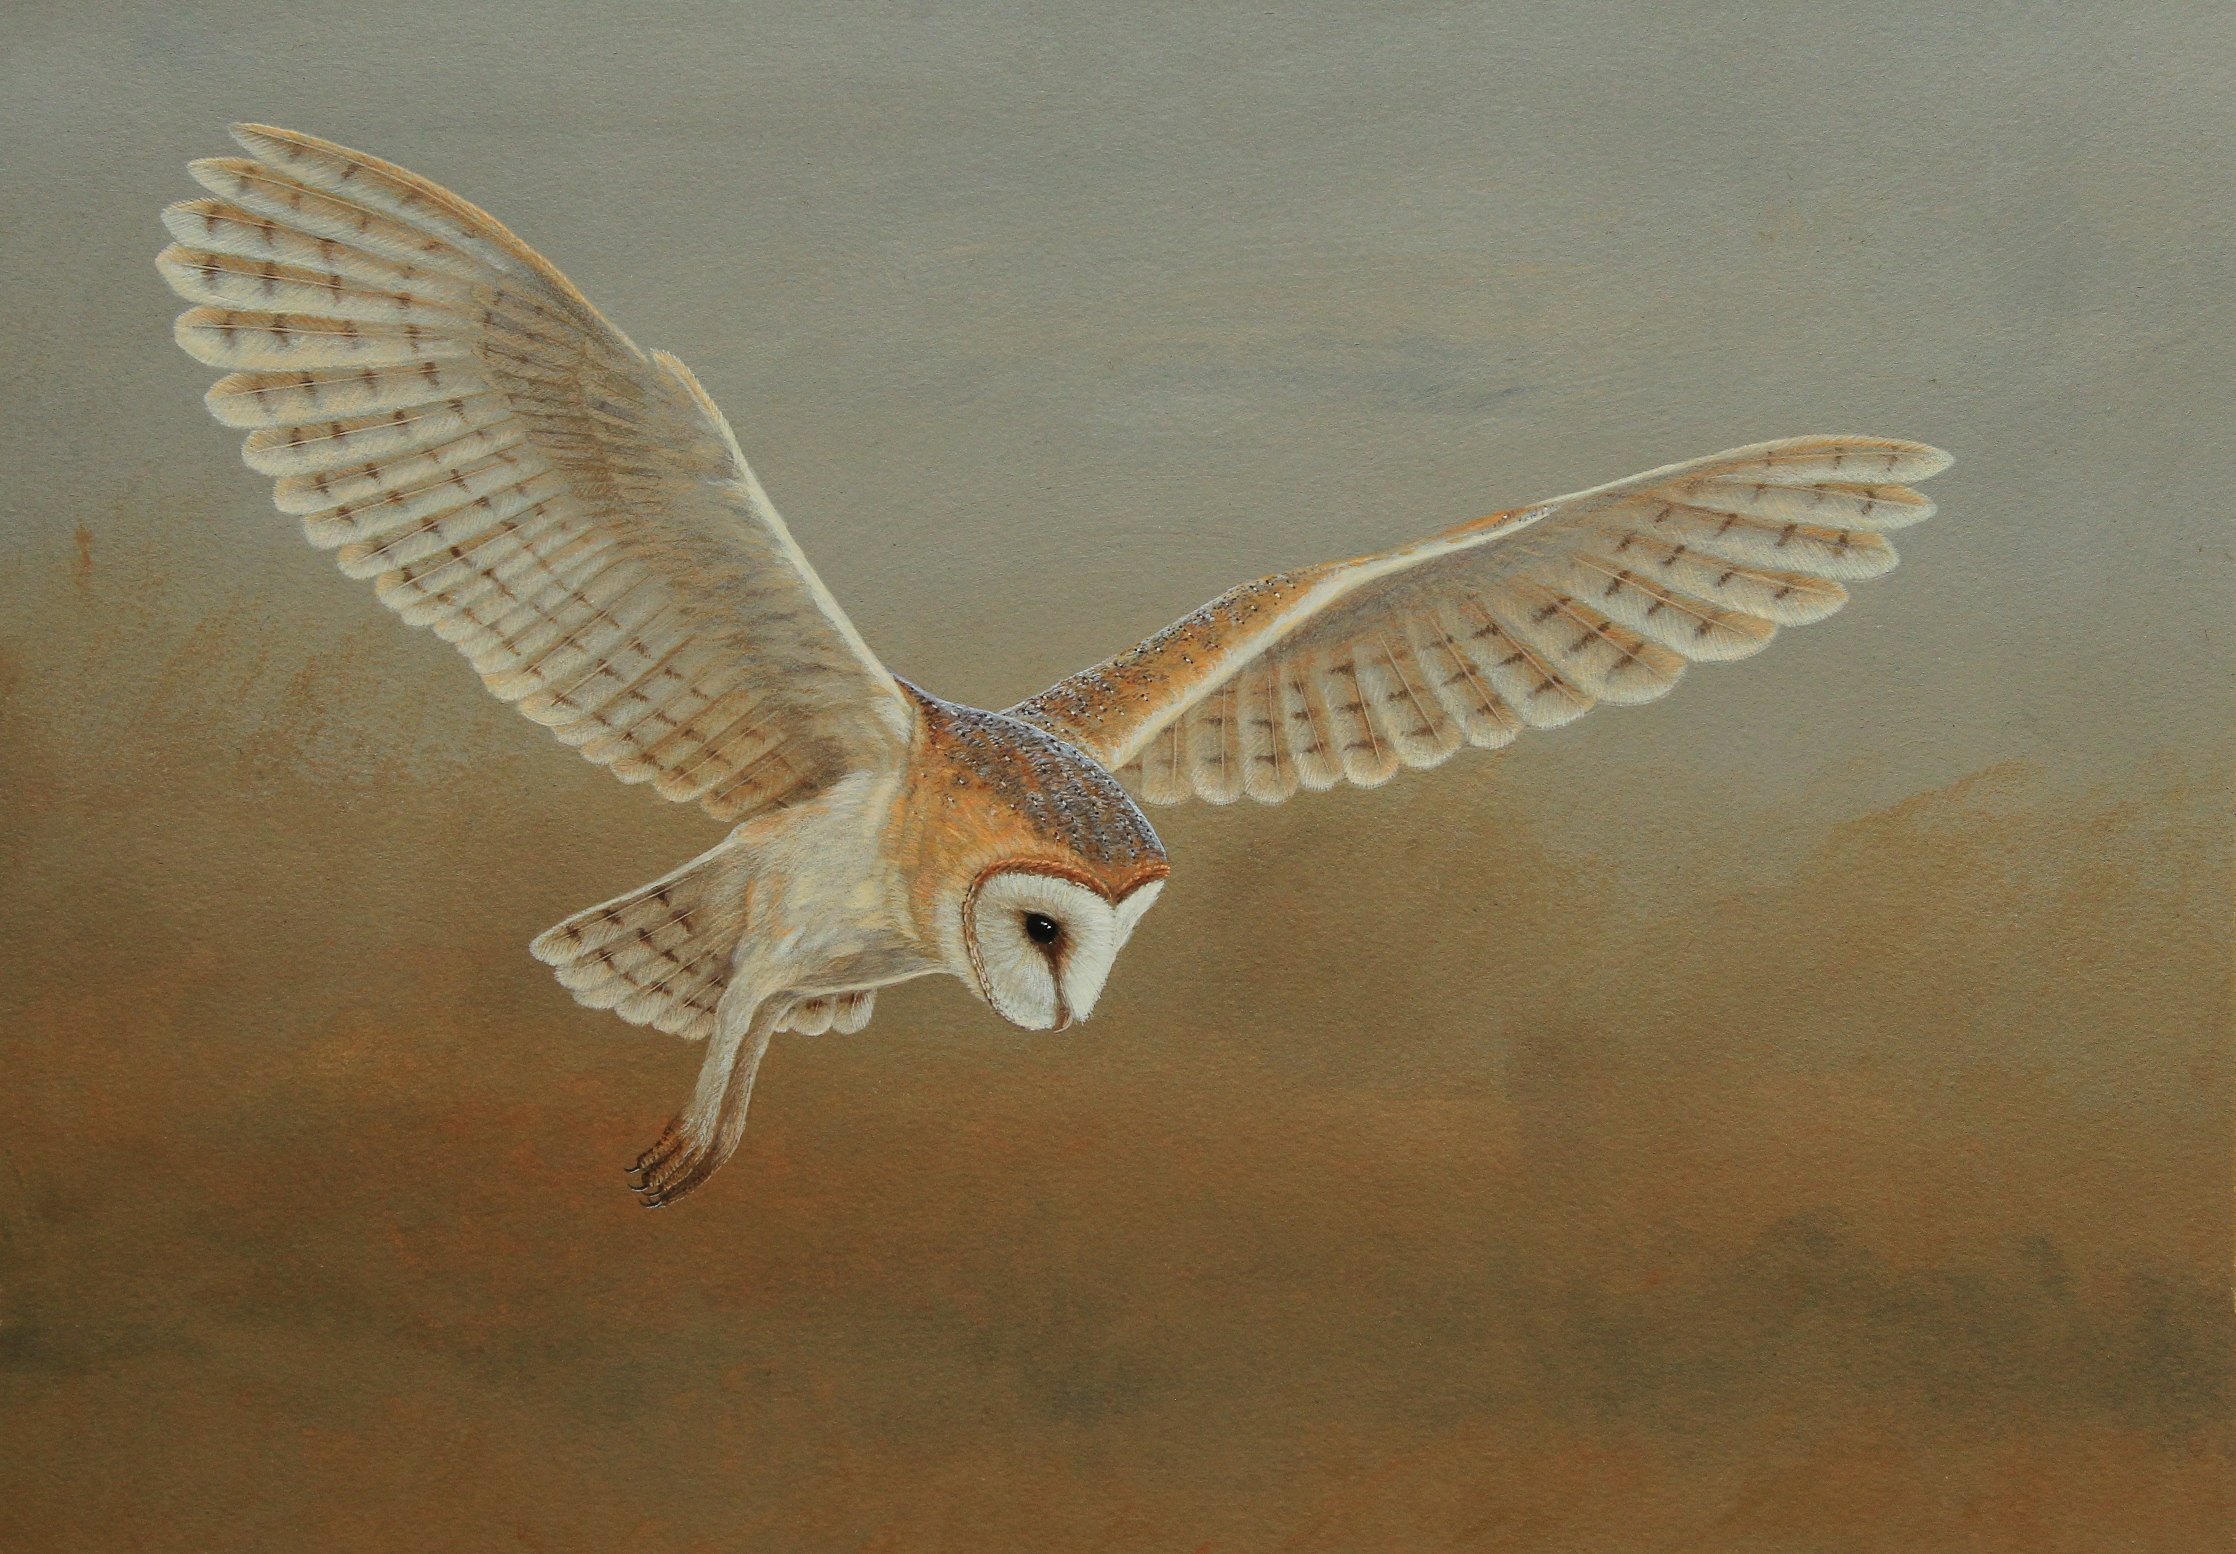 Barn owl painted by Robert E Fuller